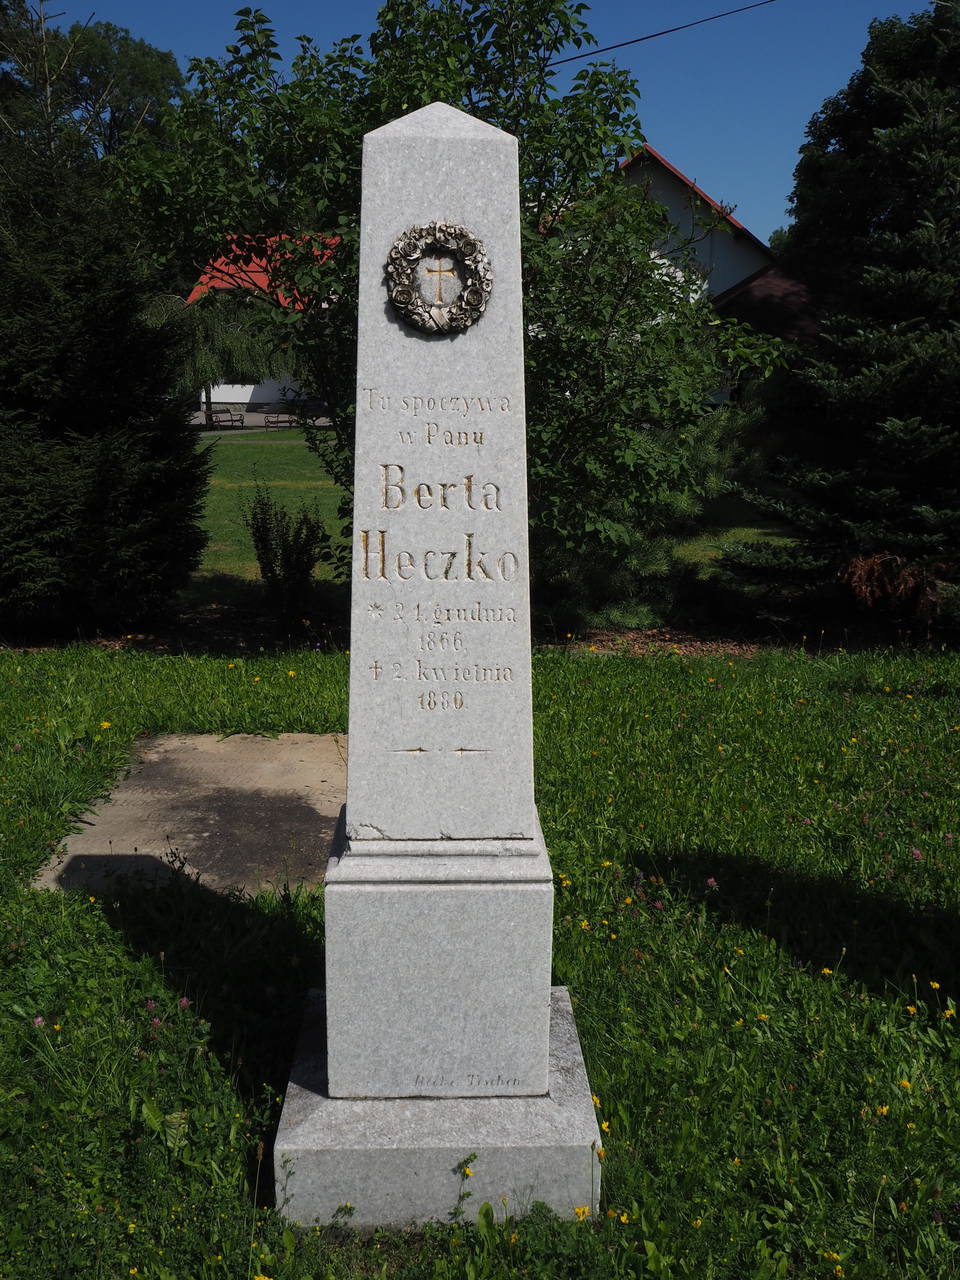 Tombstone of Berta Heczko, cemetery in Ligotka Kameralna, as of 2022